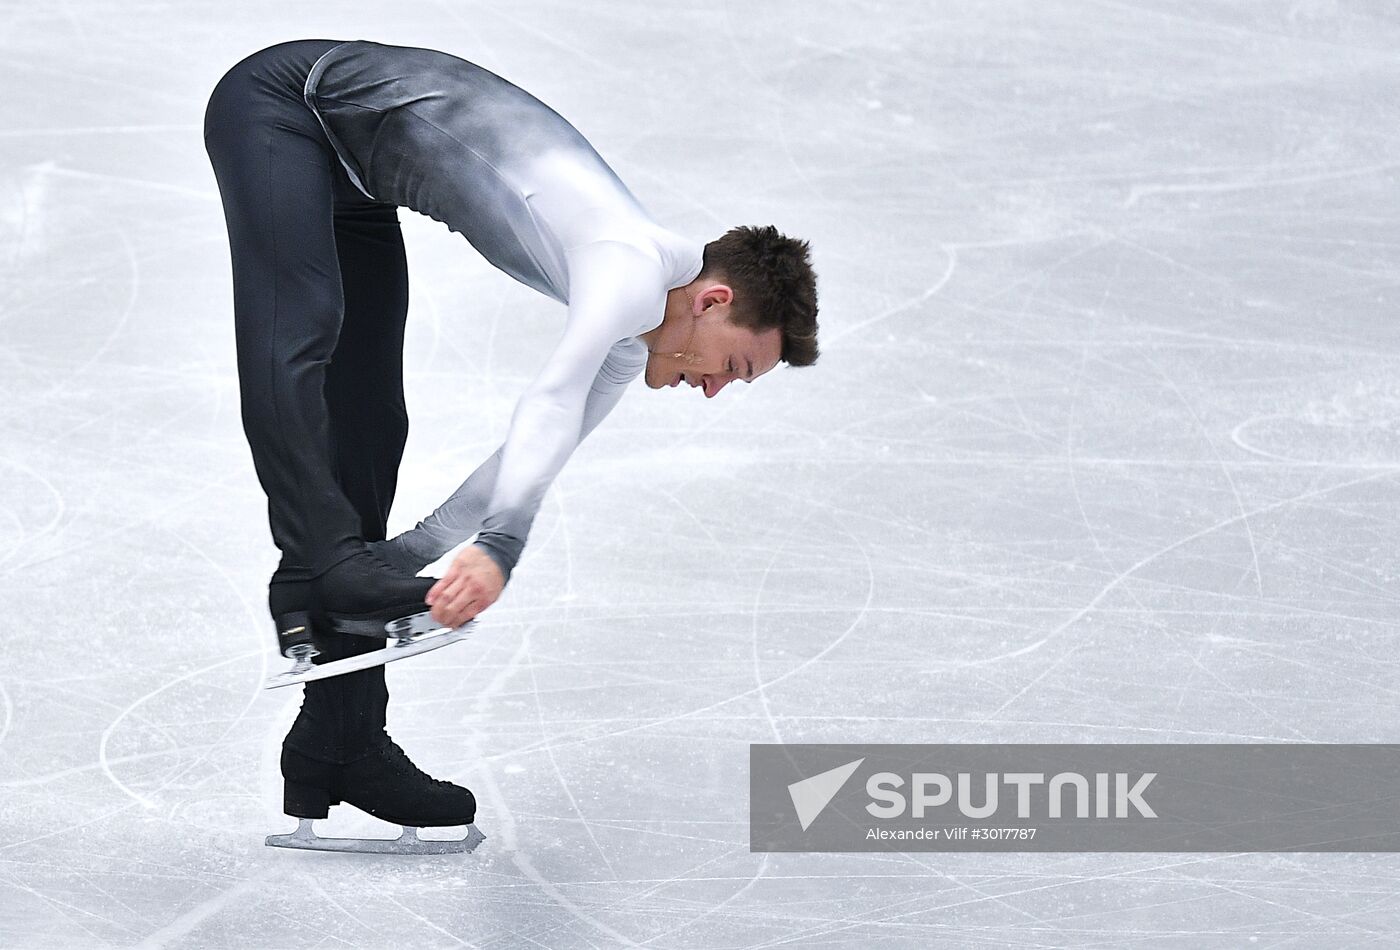 European Figure Skating Championship. Men’s free skating